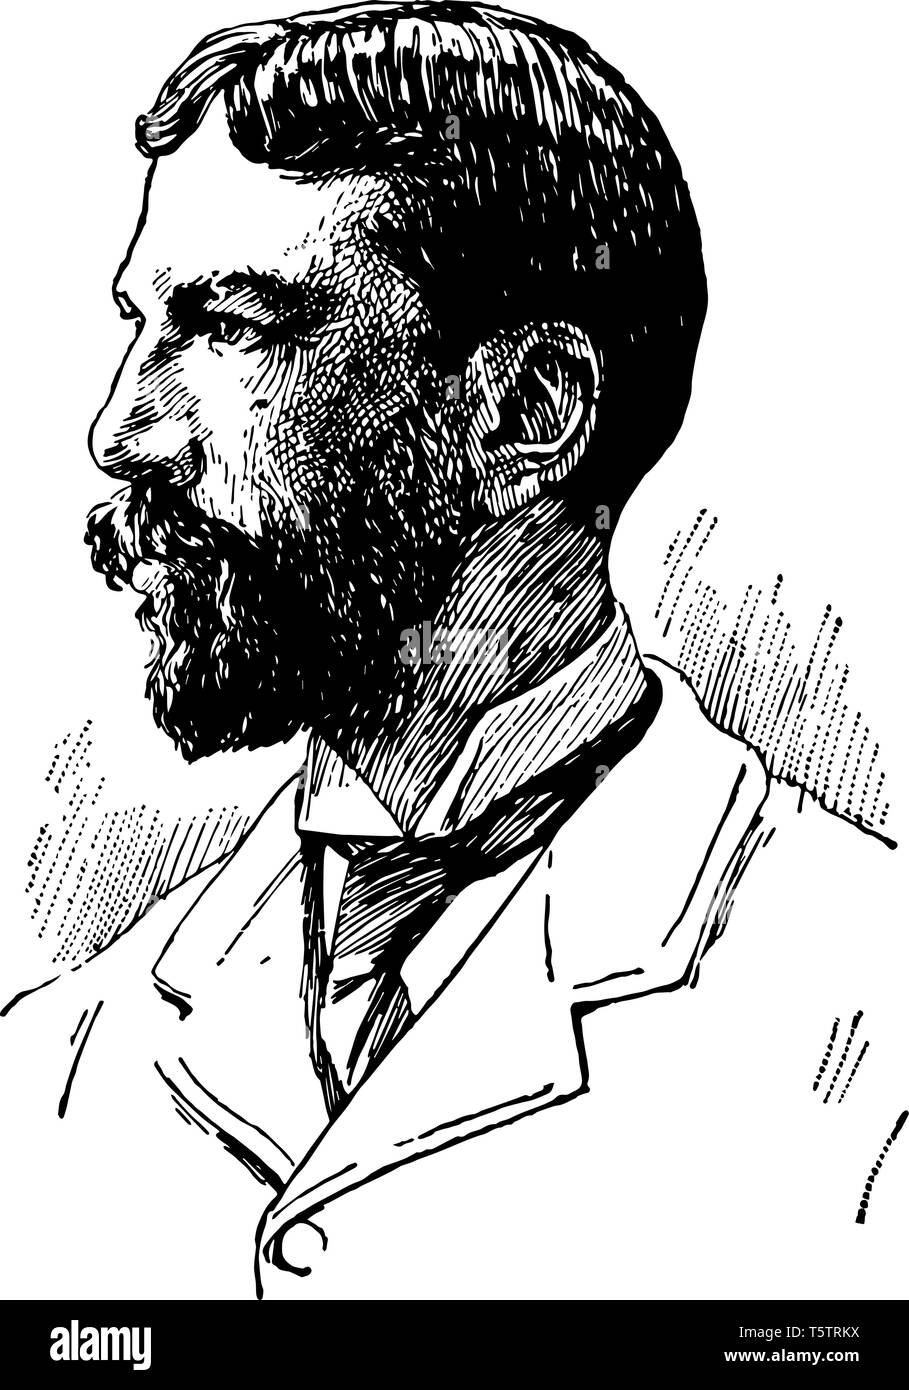 Arthur Twining Hadley 1856 bis 1930 war er Ökonom und Präsident der Yale University von 1899 bis 1921 vintage Strichzeichnung oder Gravur illustrati Stock Vektor